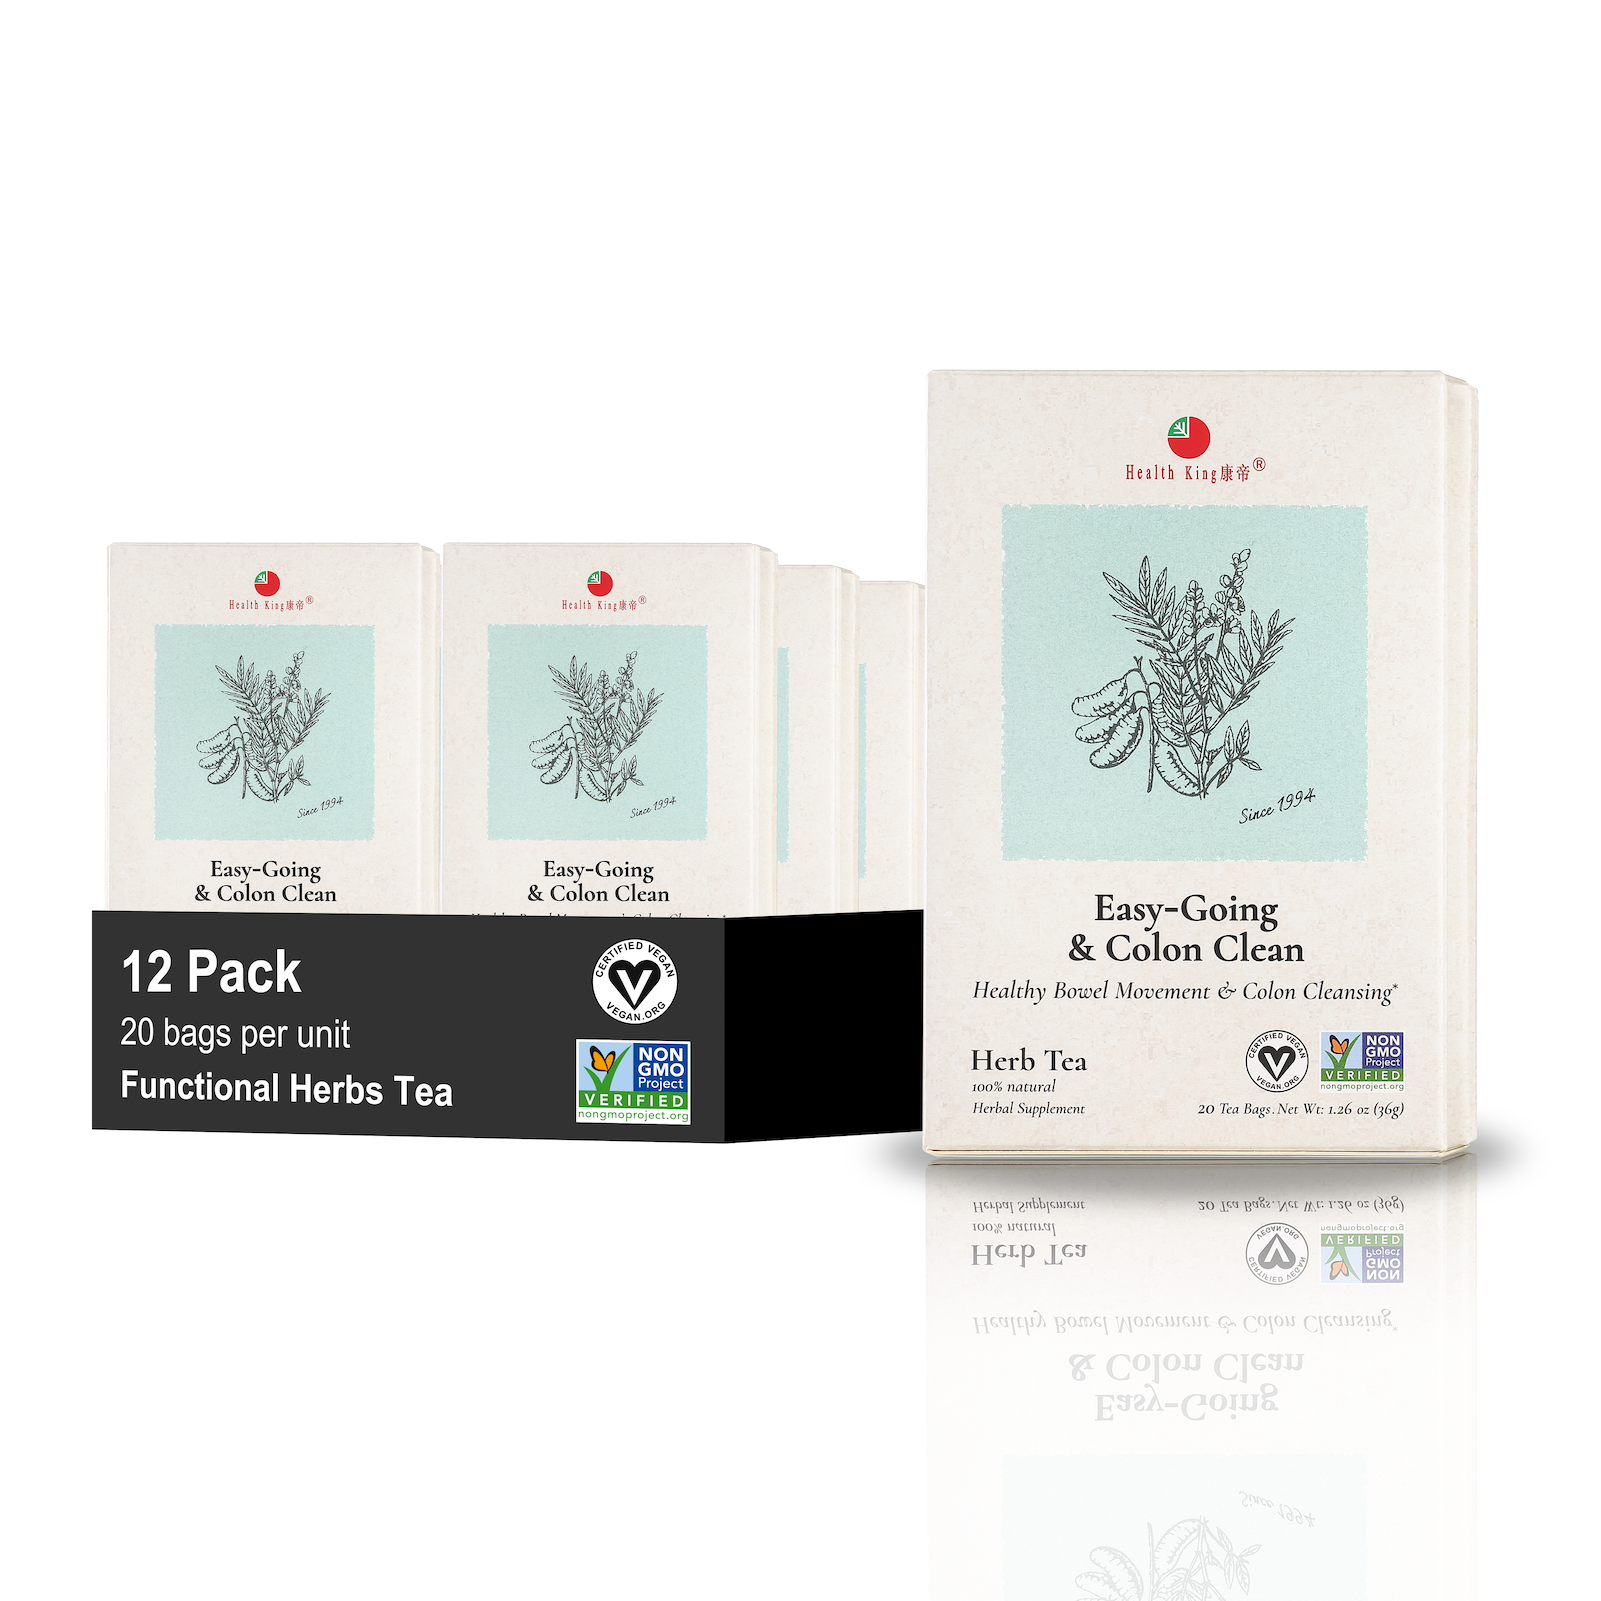 Twelve-pack of Easy-Going & Colon Clean organic herbal tea